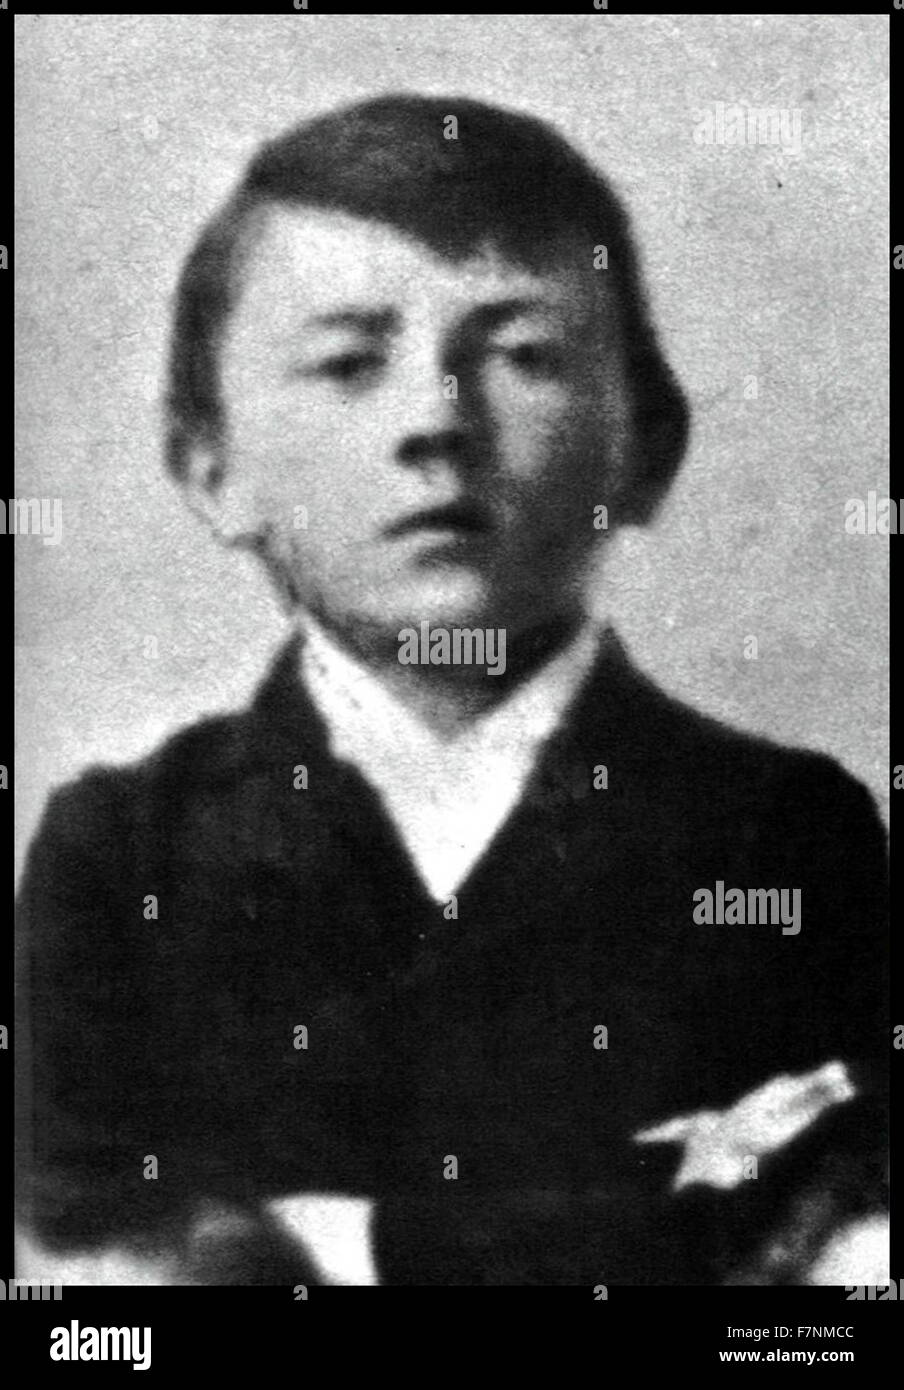 Adolf Hitler im Alter von etwa 10 im Jahre 1899. Adolf Hitler war Kanzler von Nazi-Deutschland 1933-1945 Stockfoto